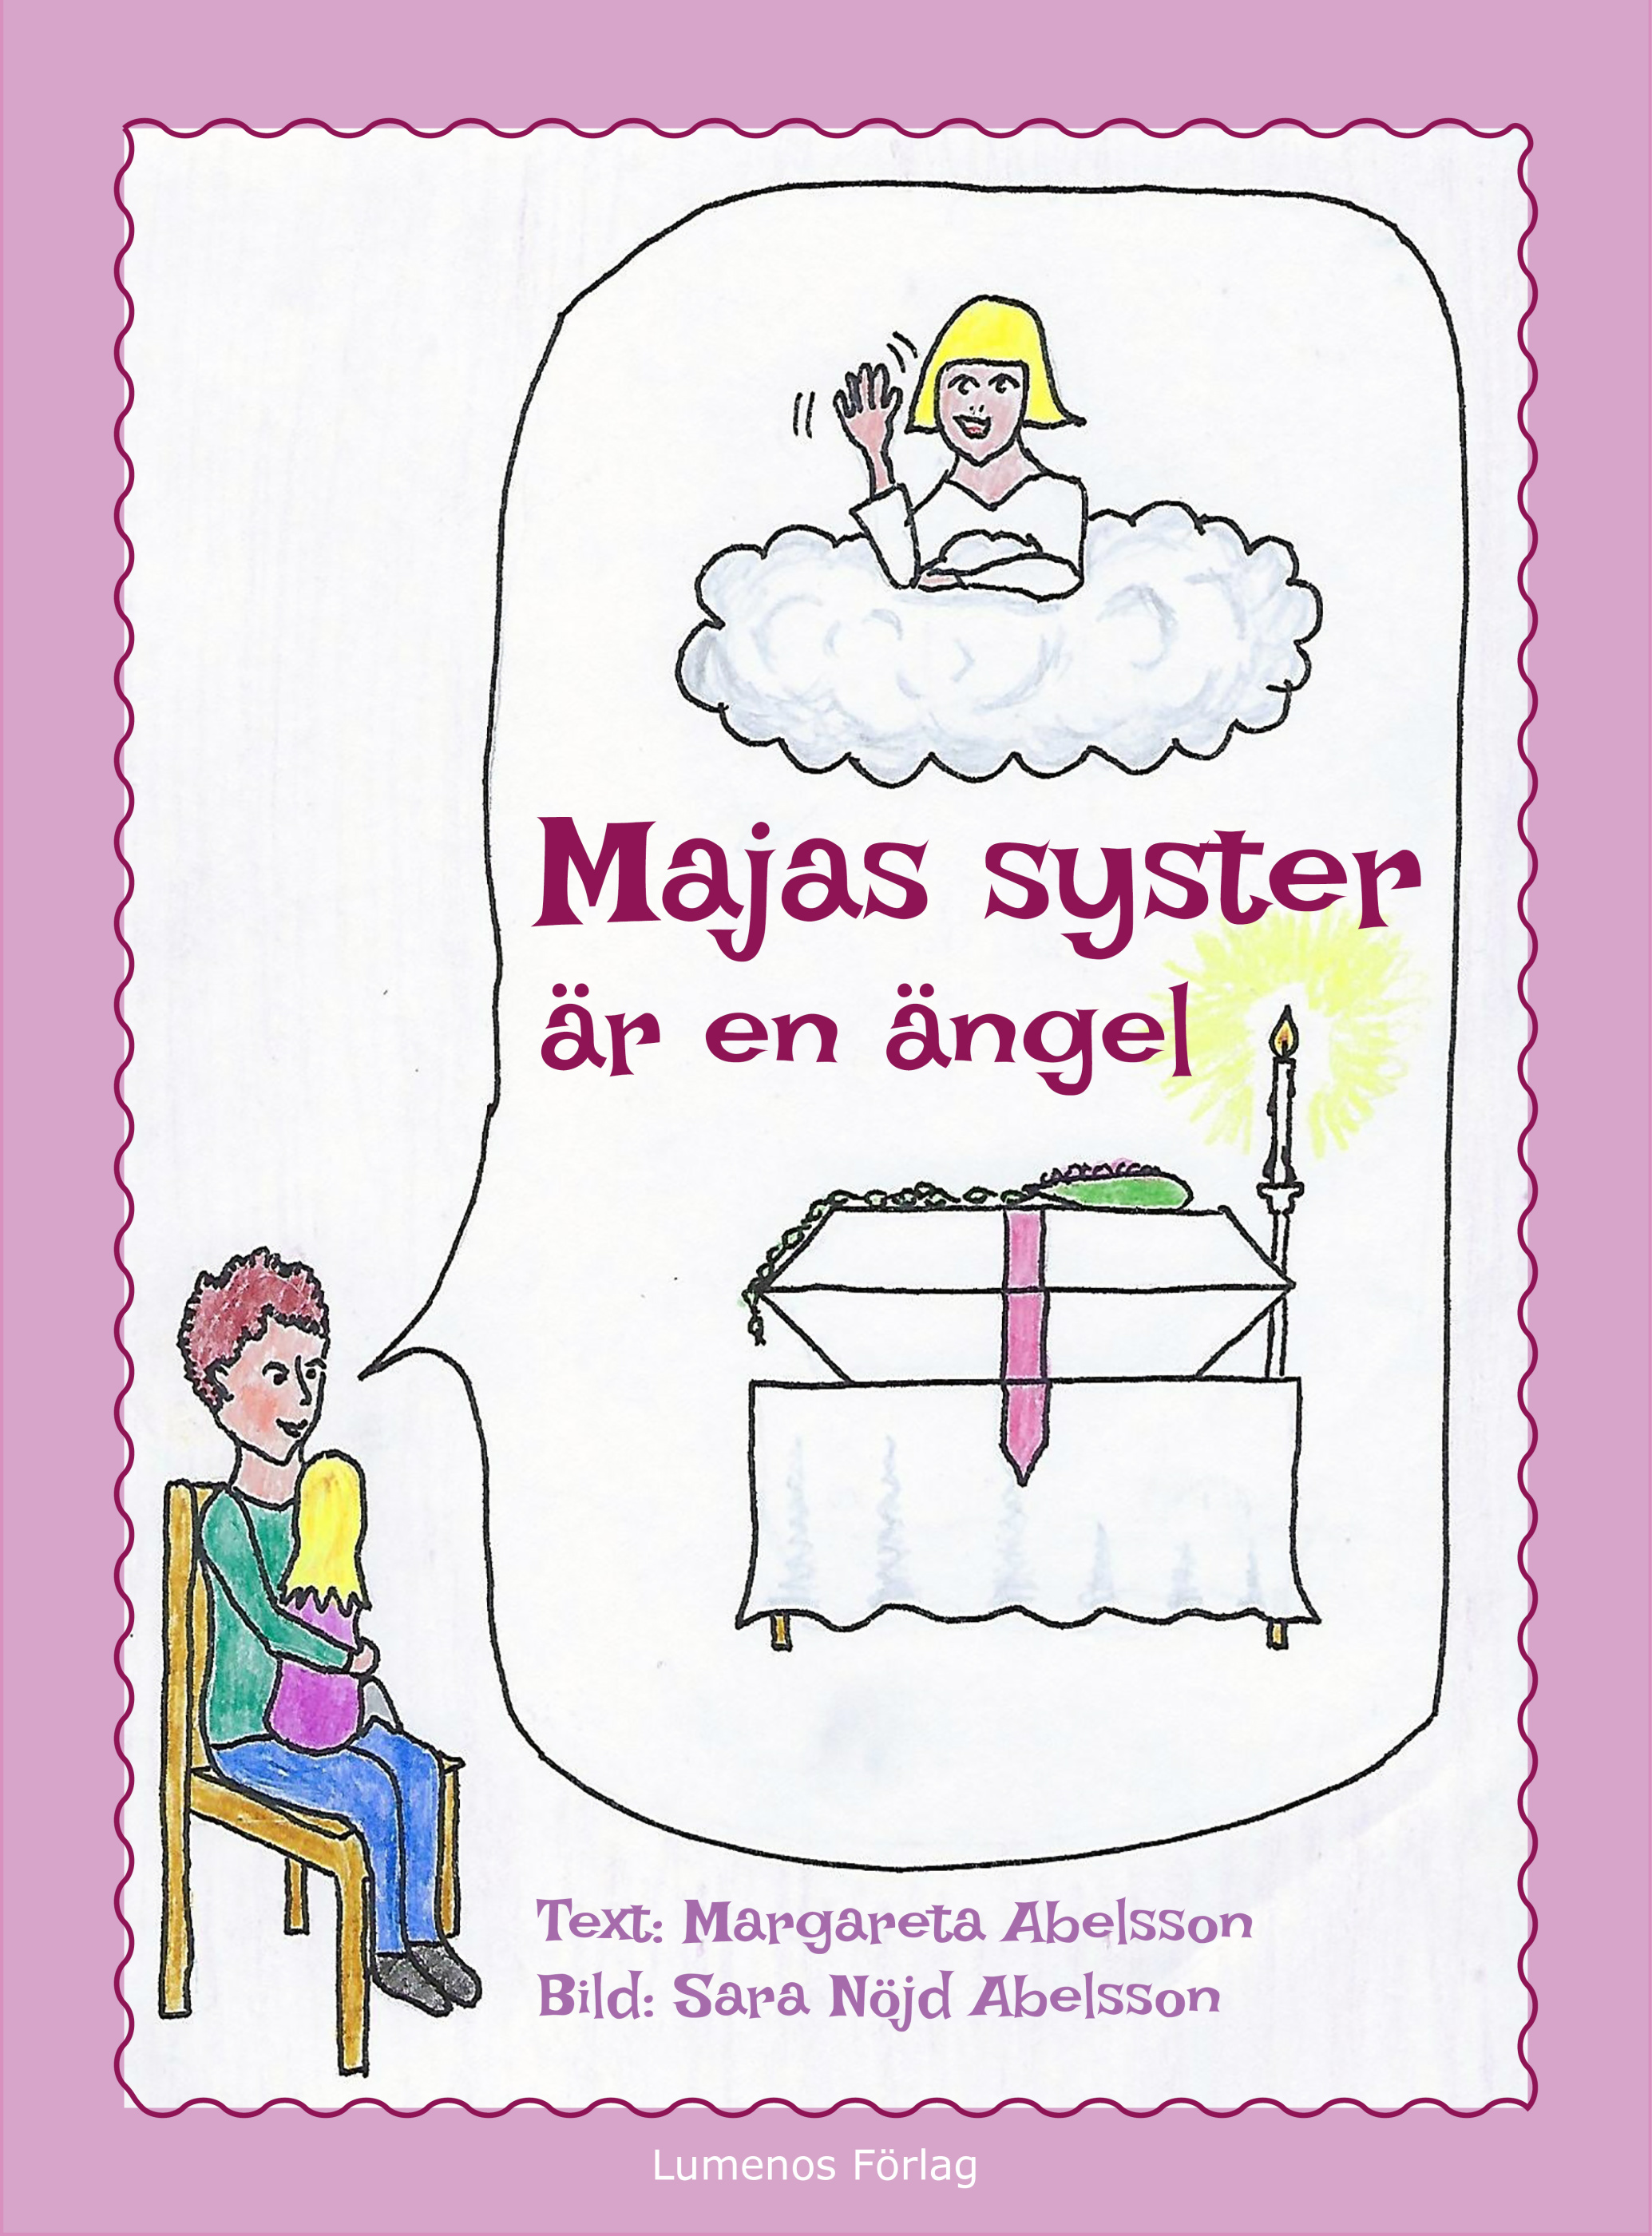 Majas syster är en ängel